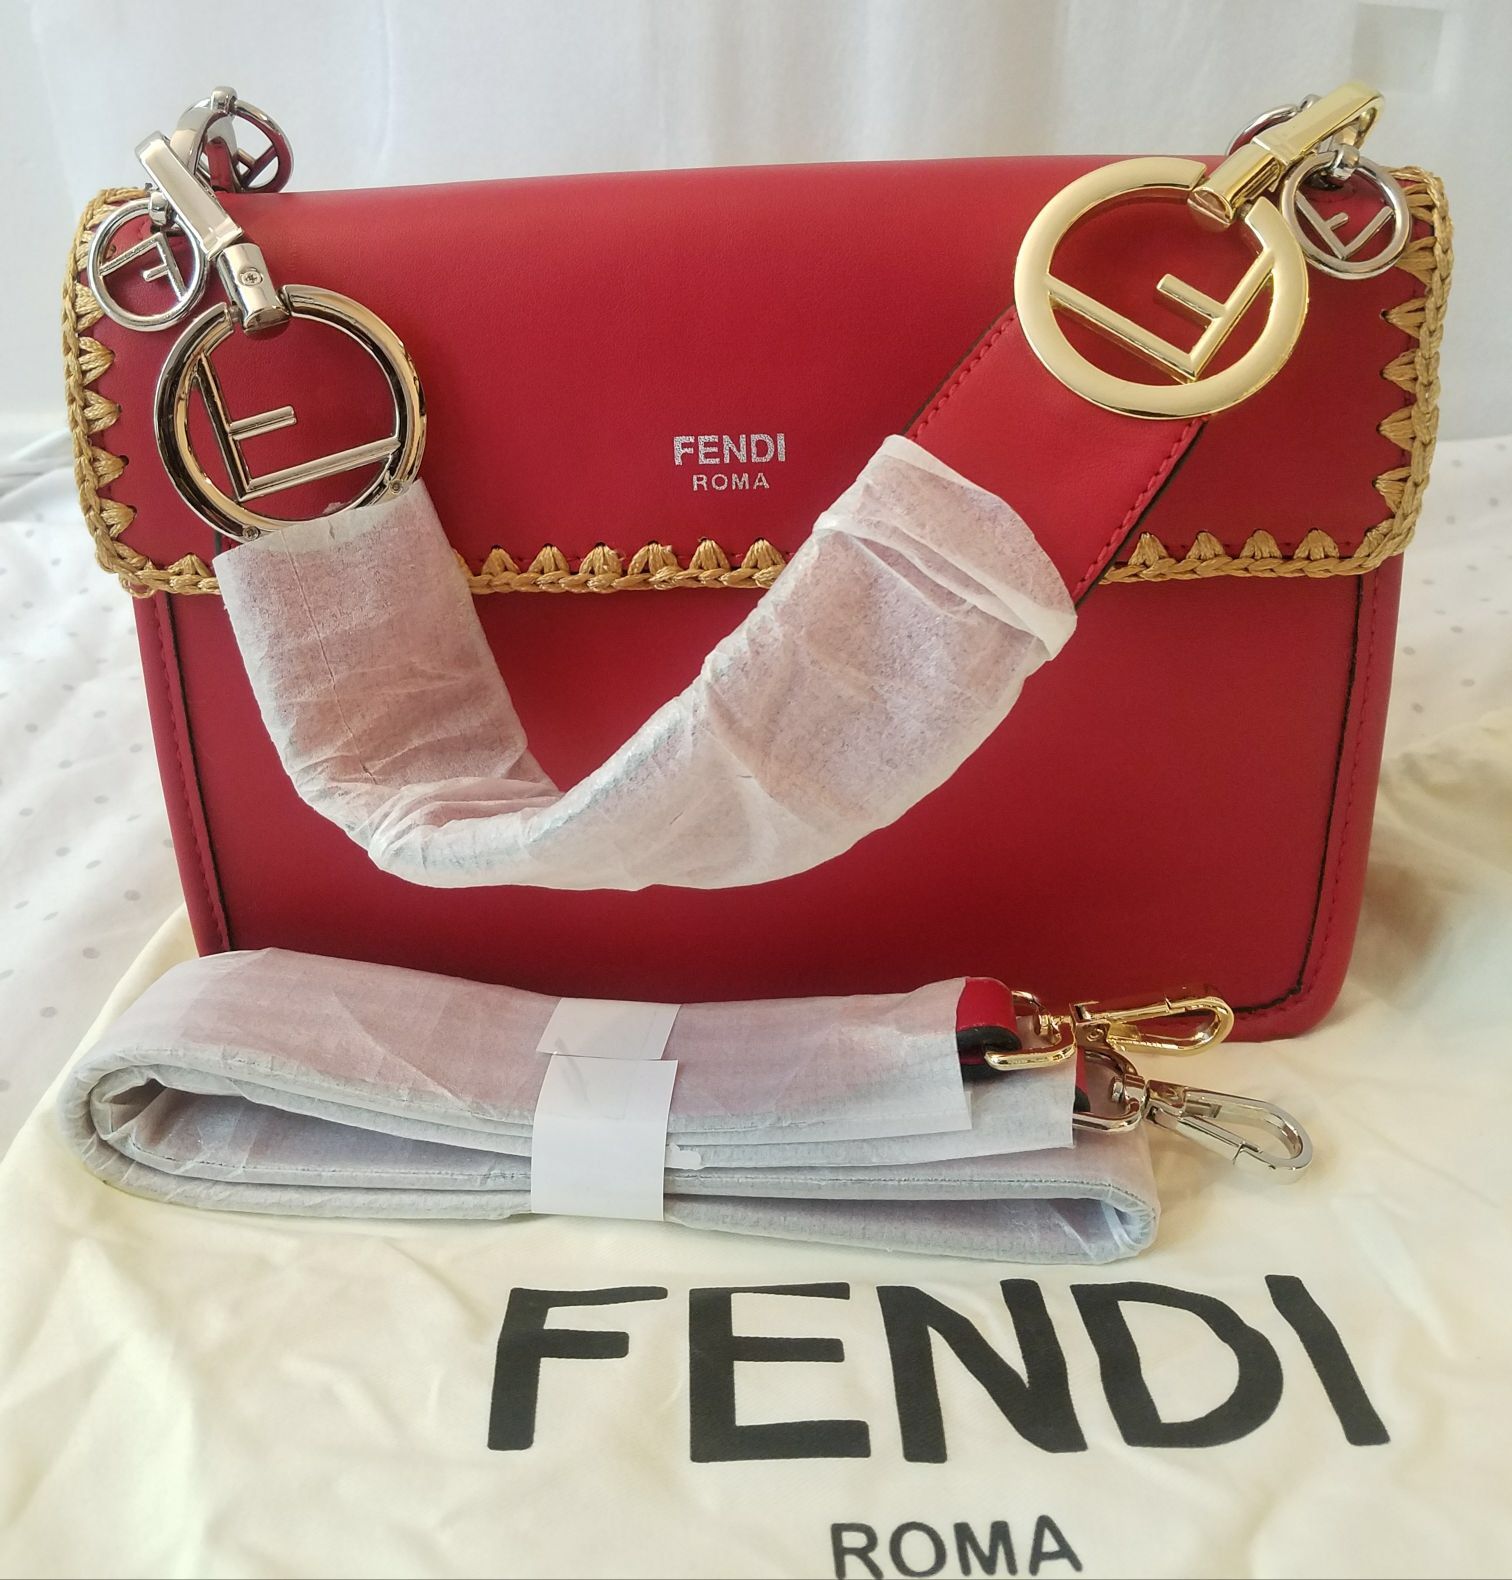 Fendi women’s bag